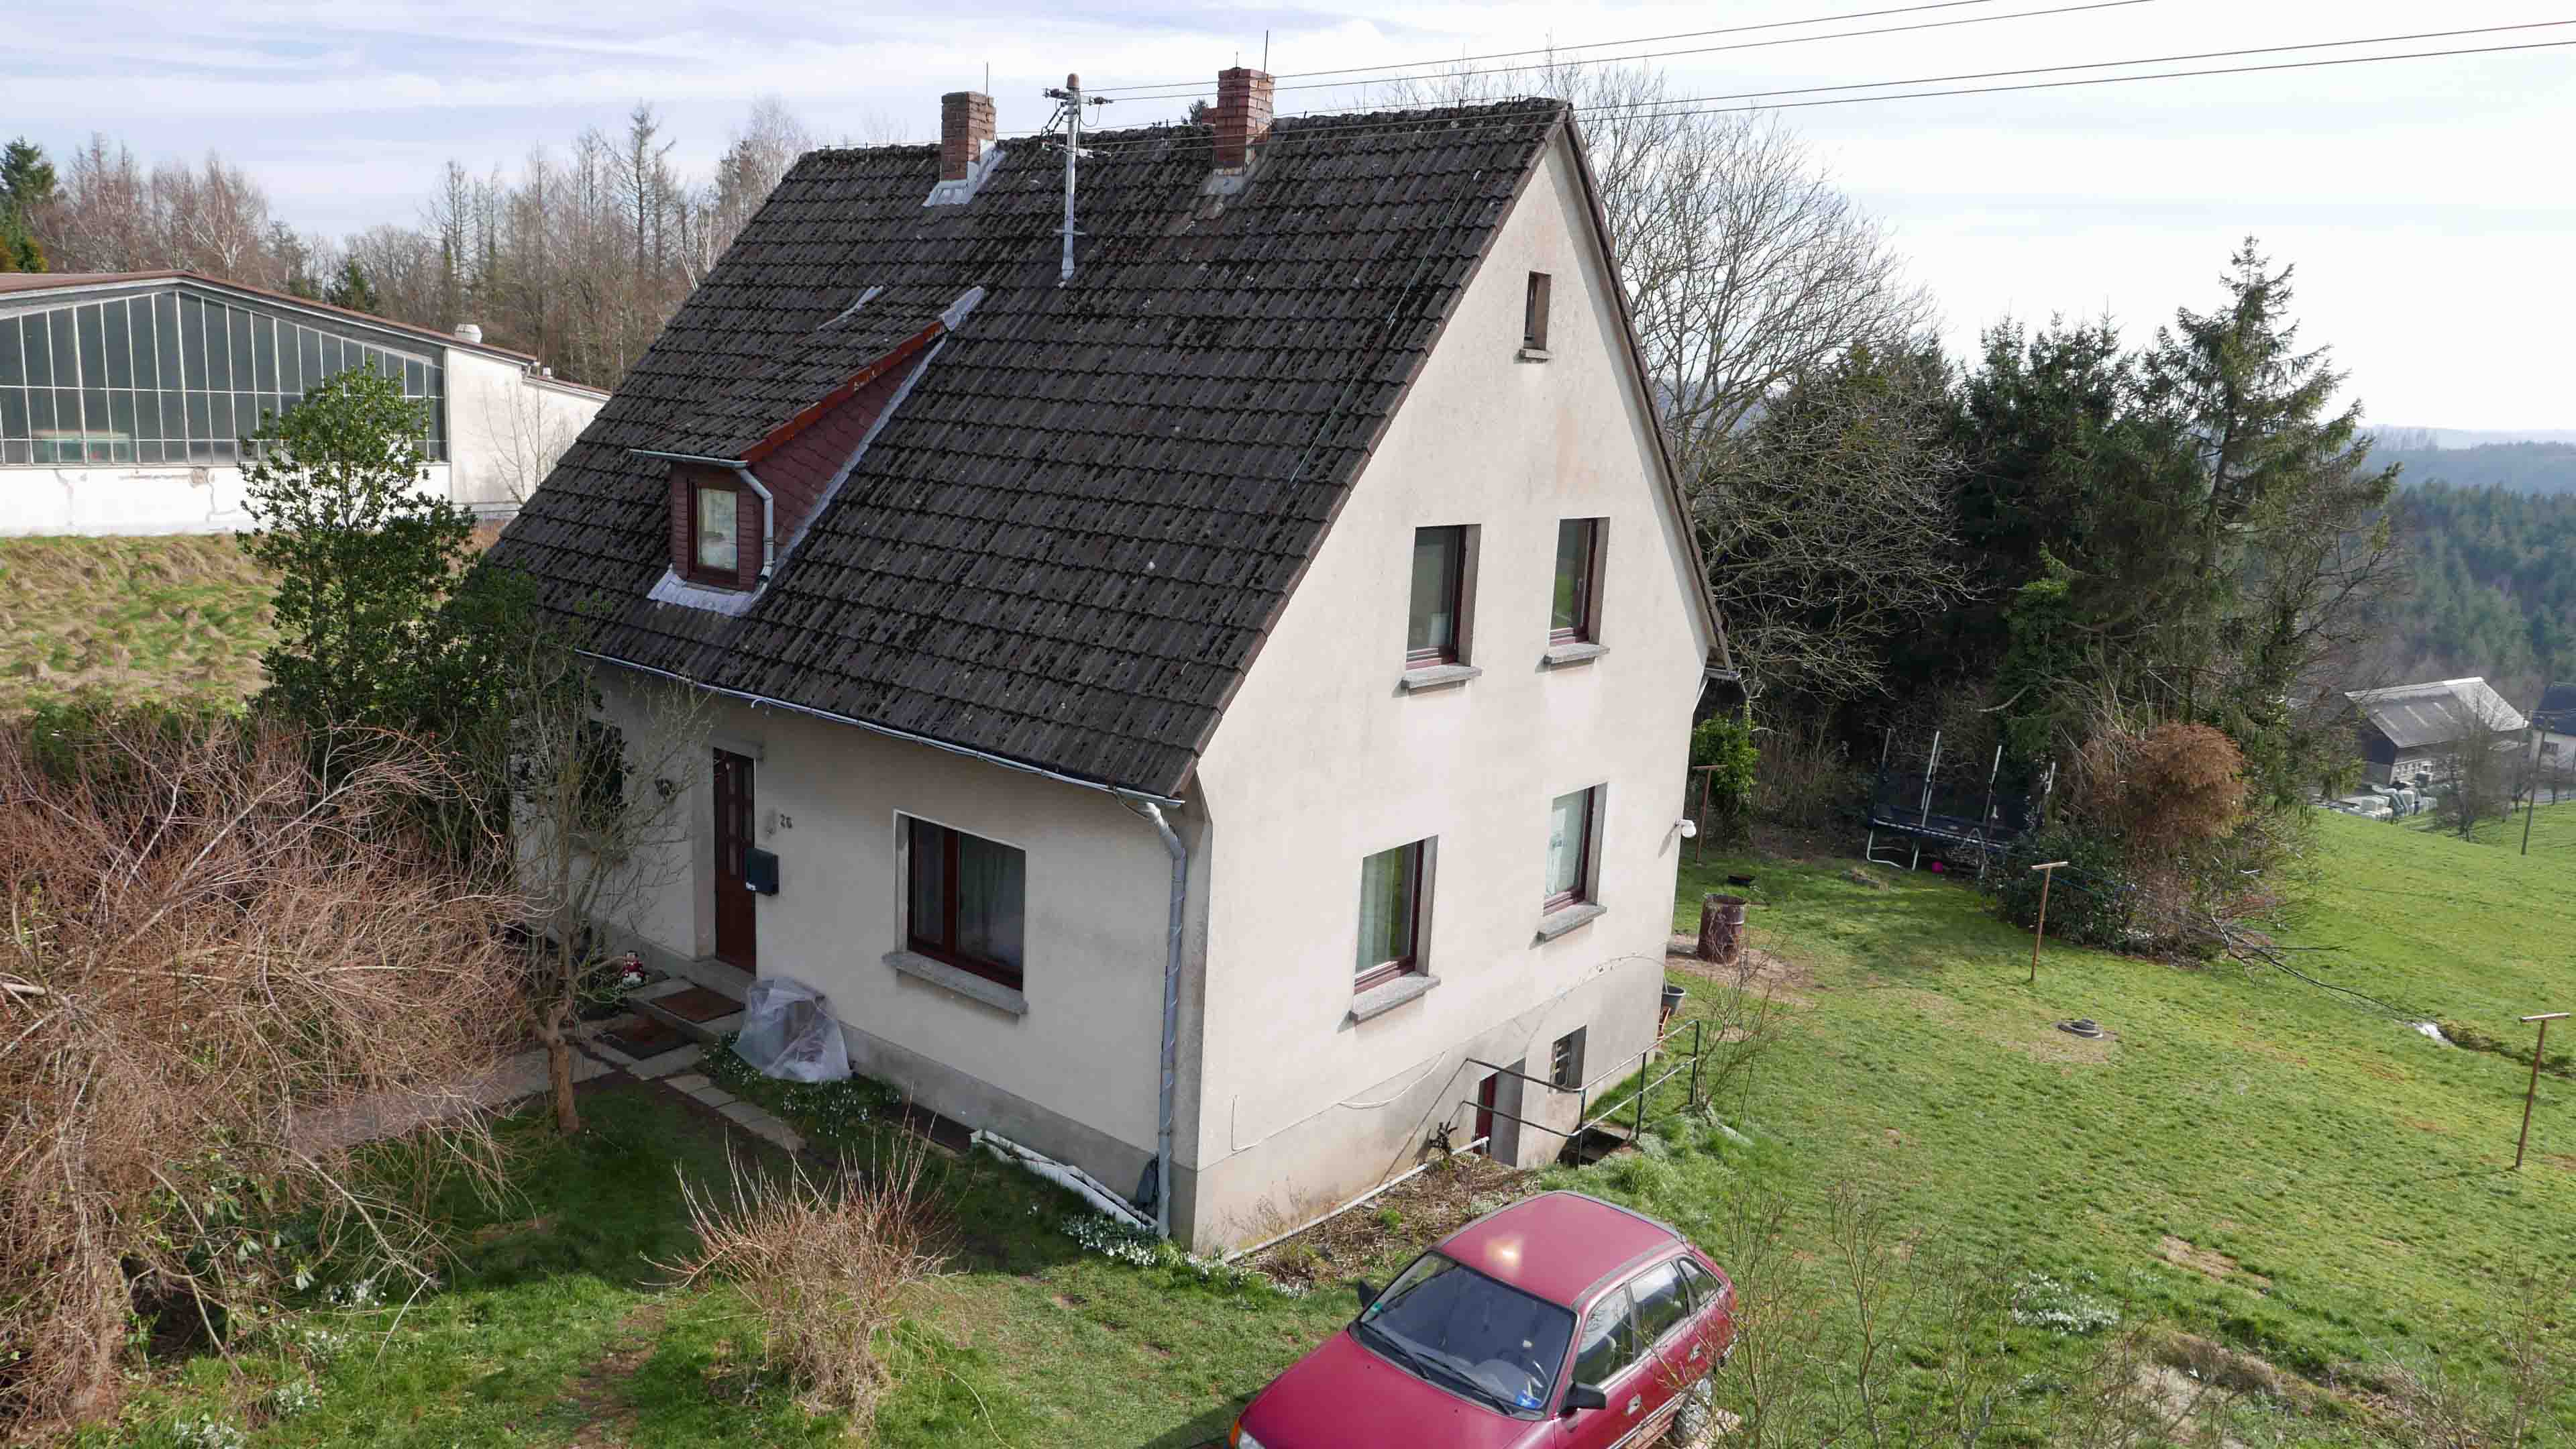 Birken-Honigsessen: Preiswertes Einfamilienhaus, ...auf ca. 910 m² Hausgrundstück  für 145.000,00 €, oder…